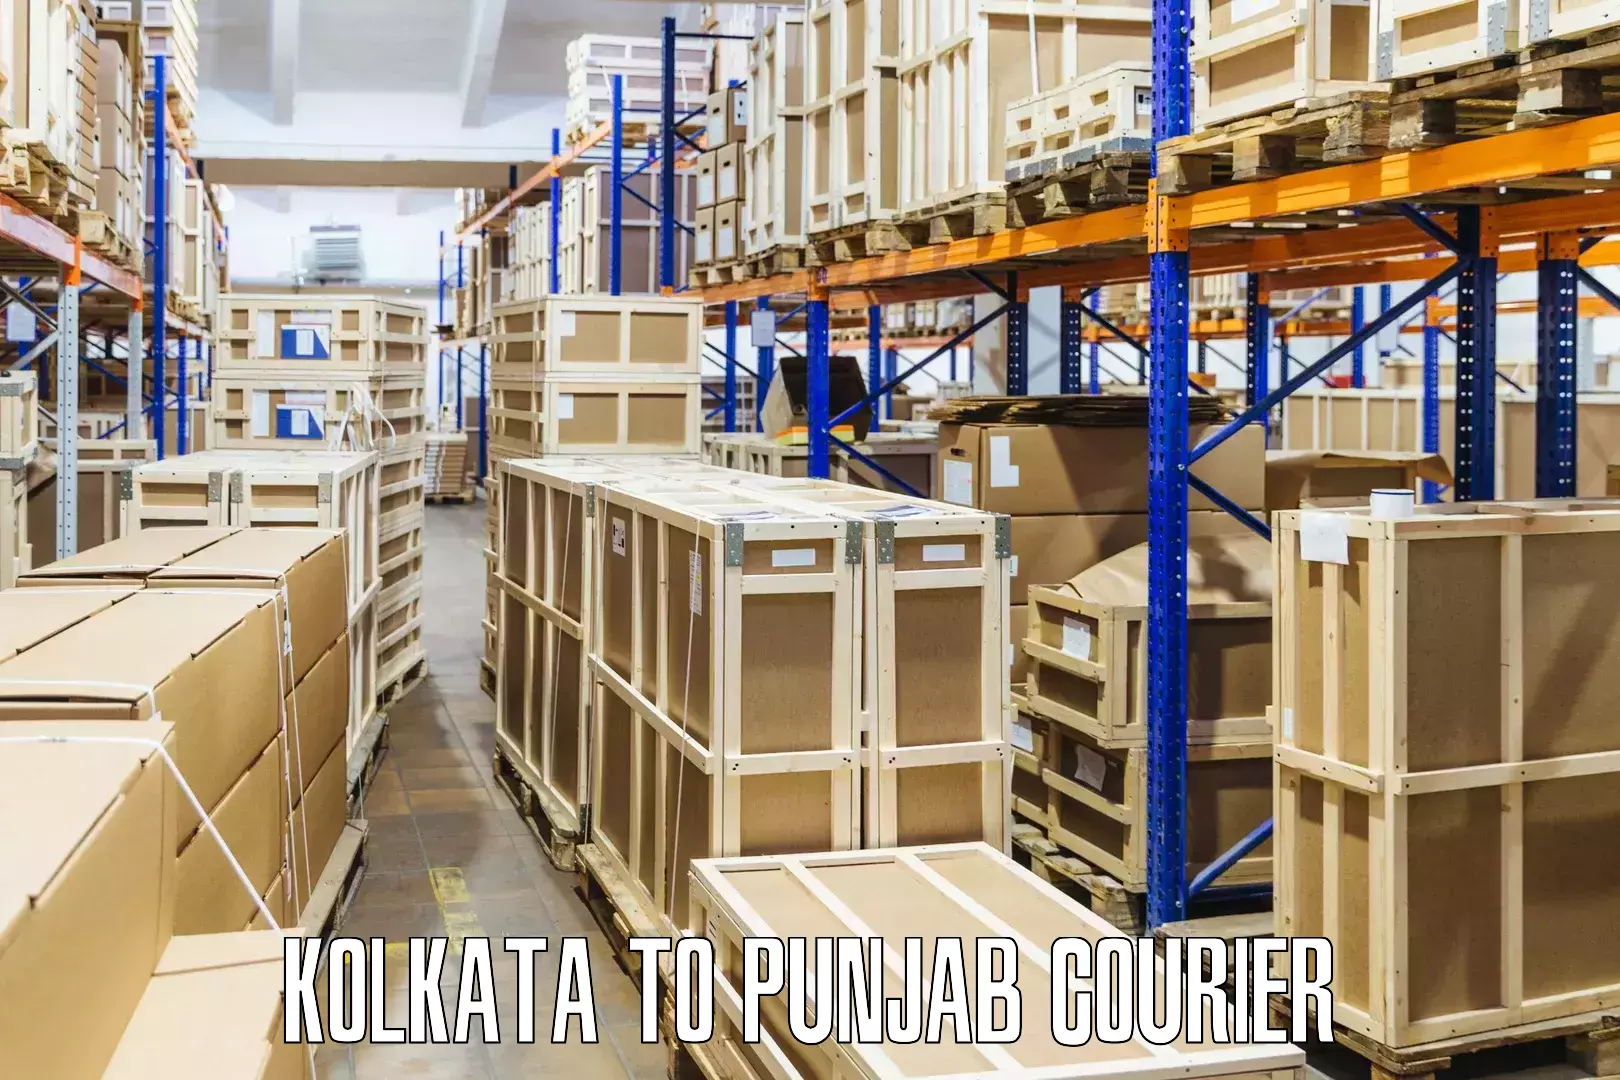 Door-to-door freight service Kolkata to Mohali